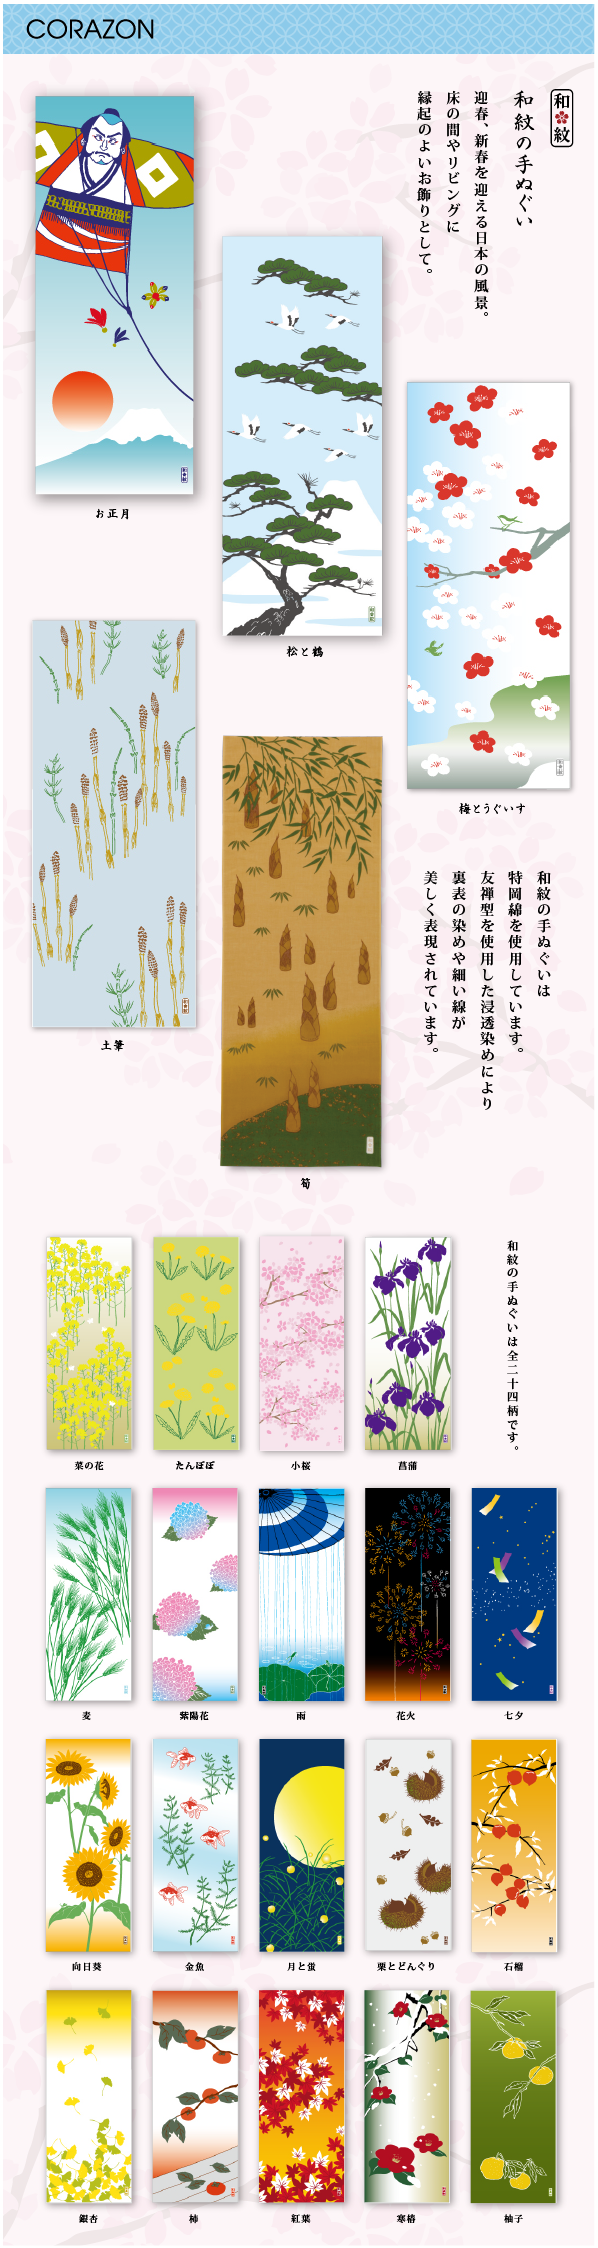 CORAZONメルマガ　20141202<br>

迎春、新春を迎える日本の風景。<br>
床の間やリビングに縁起のよいお飾りとして。<br>
和紋の手ぬぐいは特岡綿を使用しています。<br>
友禅型を使用した浸透染めにより裏表の染めや細い線が美しく表現されています。<br>
<br>
和紋の手ぬぐいは全二十四柄です。<br>





